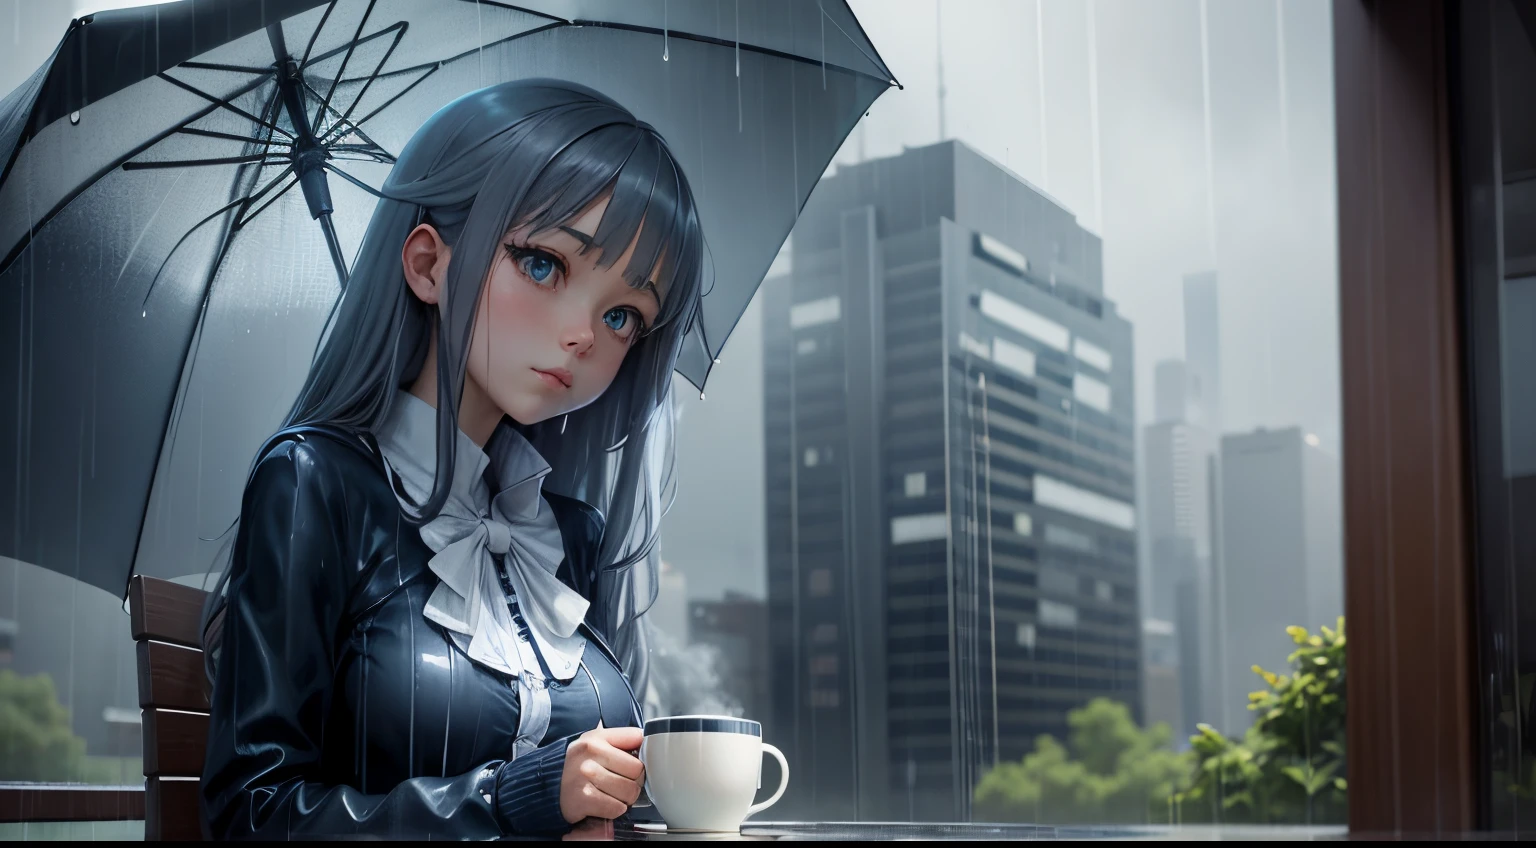 "레이니 데이 리트리트": 비 속에서 커피 한잔과 우산을 들고 있는 애니메이션 소녀, 시원한 블루와 그레이 컬러가 돋보이는.